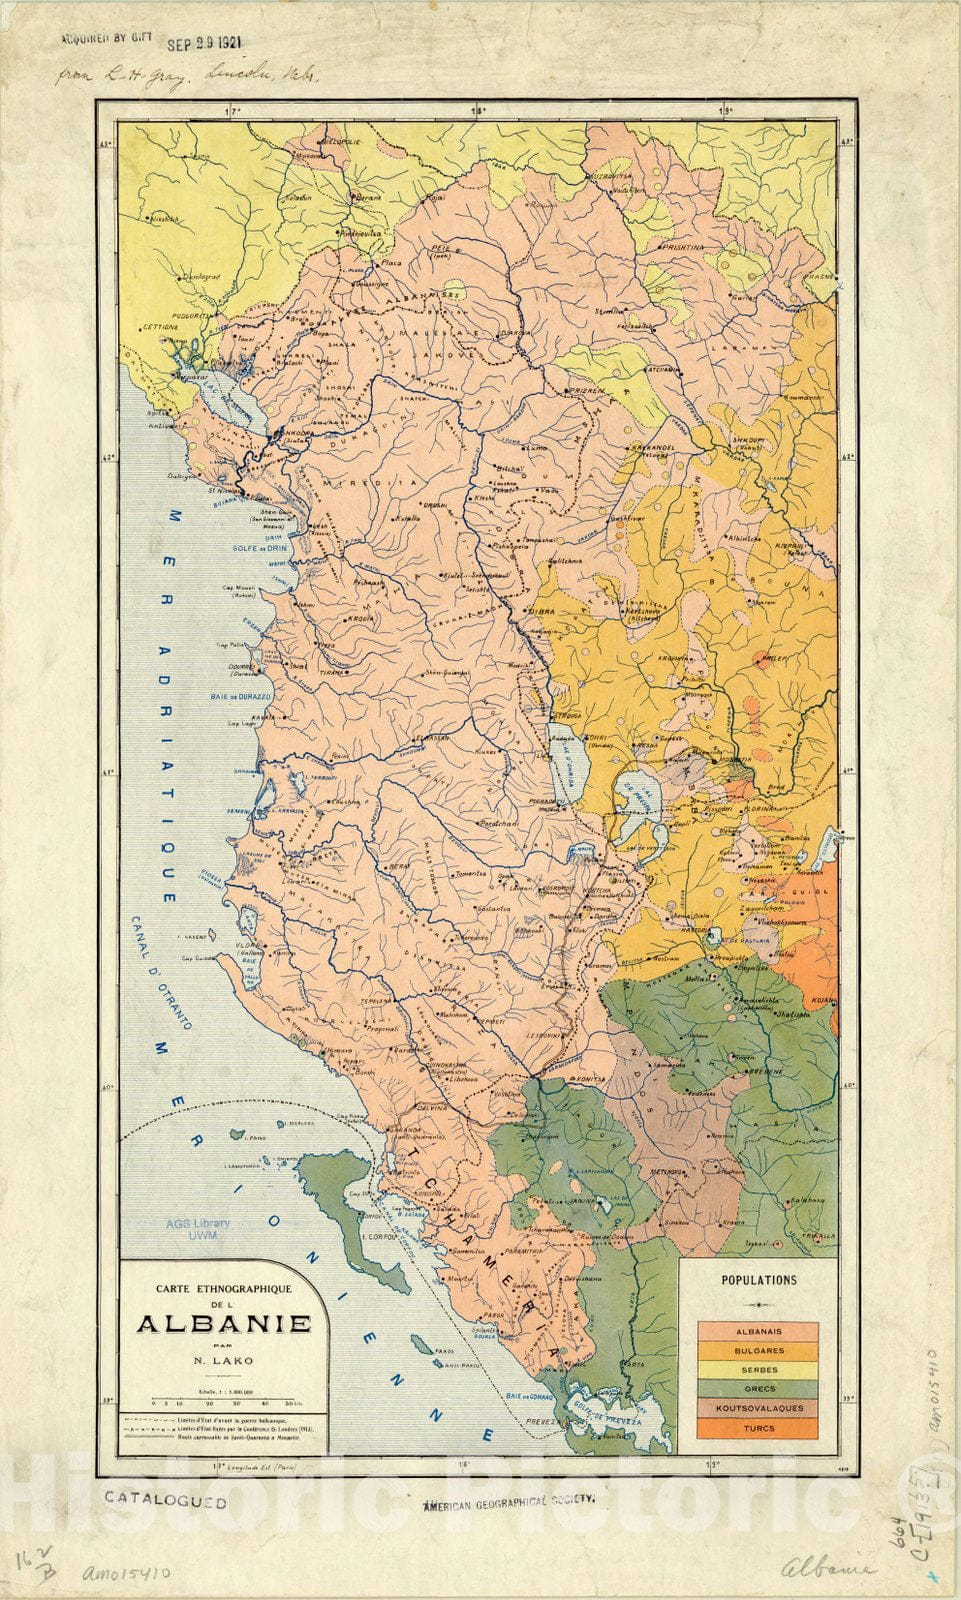 Map : Albania 1913, Carte ethnographique de l'Albanie , Antique Vintage Reproduction